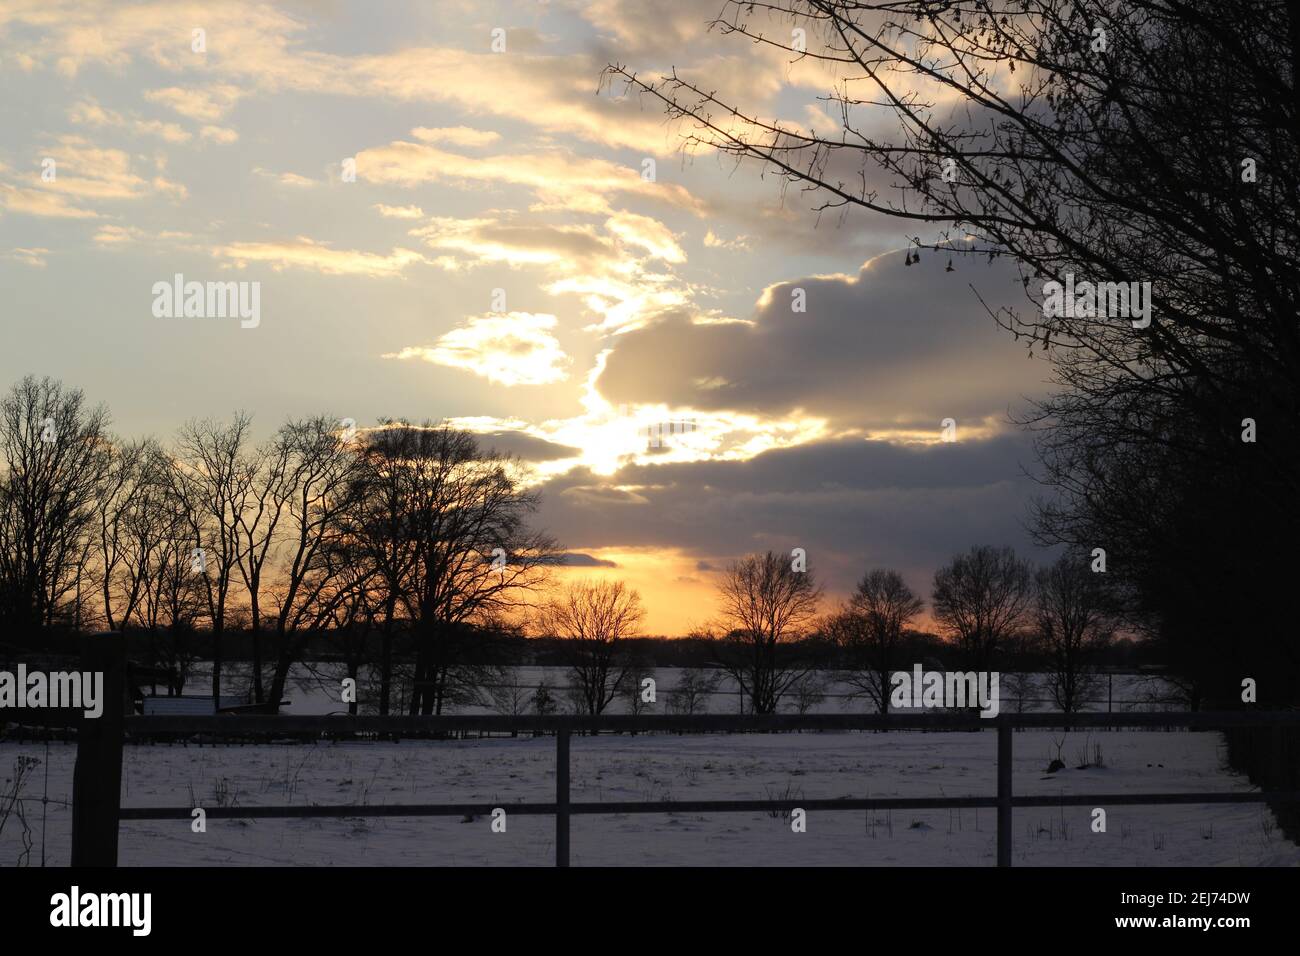 Un bellissimo tramonto con cielo nuvoloso e alberi nel sfondo Foto Stock